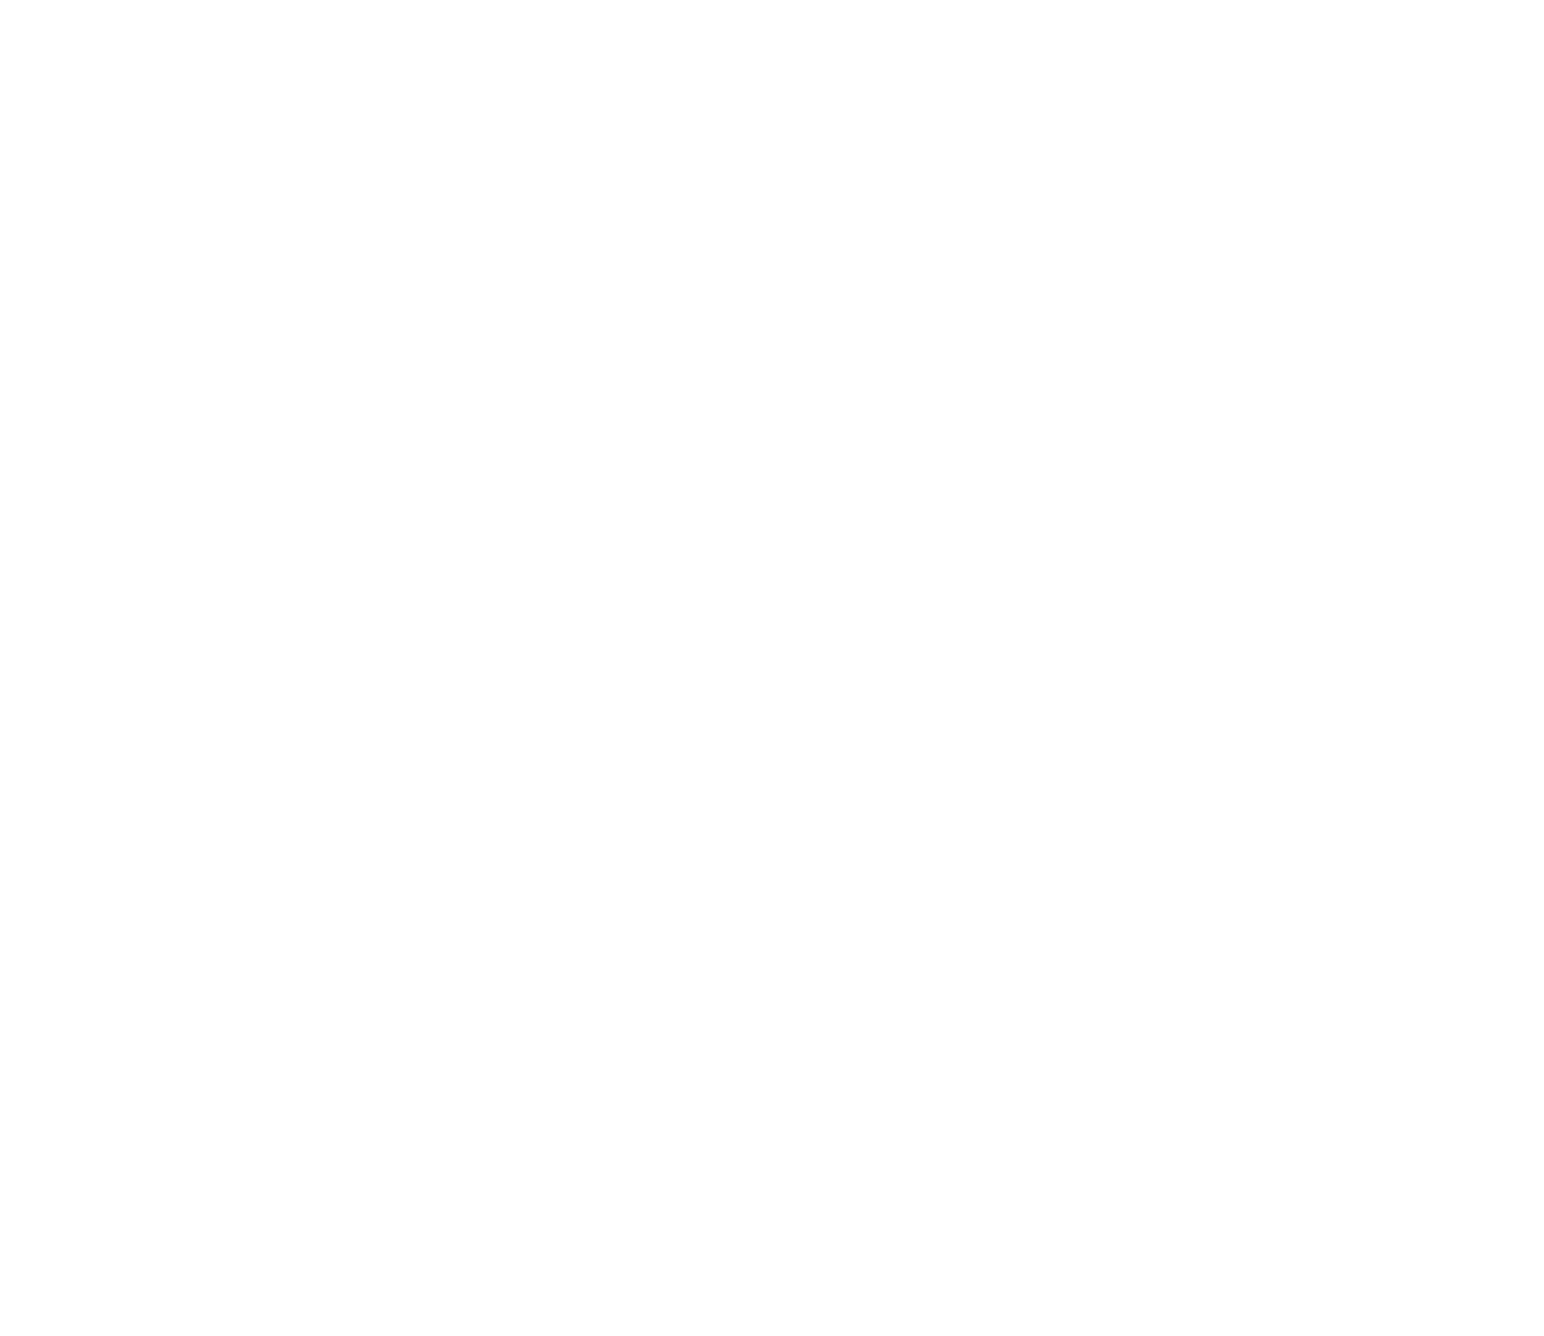 AgileThought logo for dark backgrounds (transparent PNG)